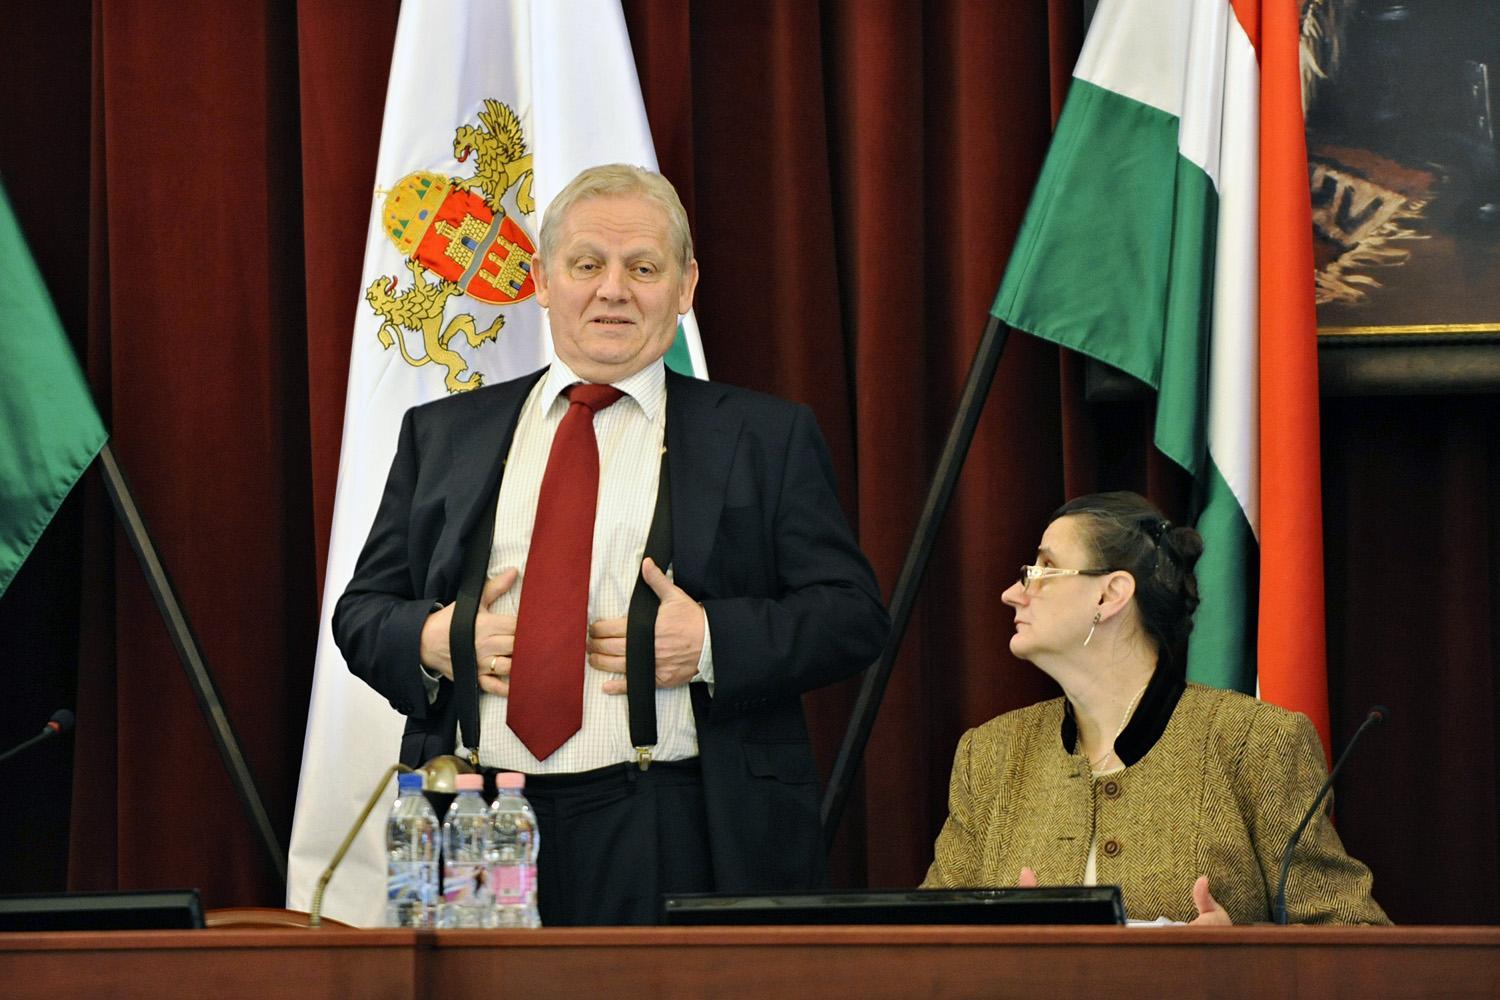 Polgármester helyett kormánybiztosként viselkedik – vádolják Tarlóst a baloldalon